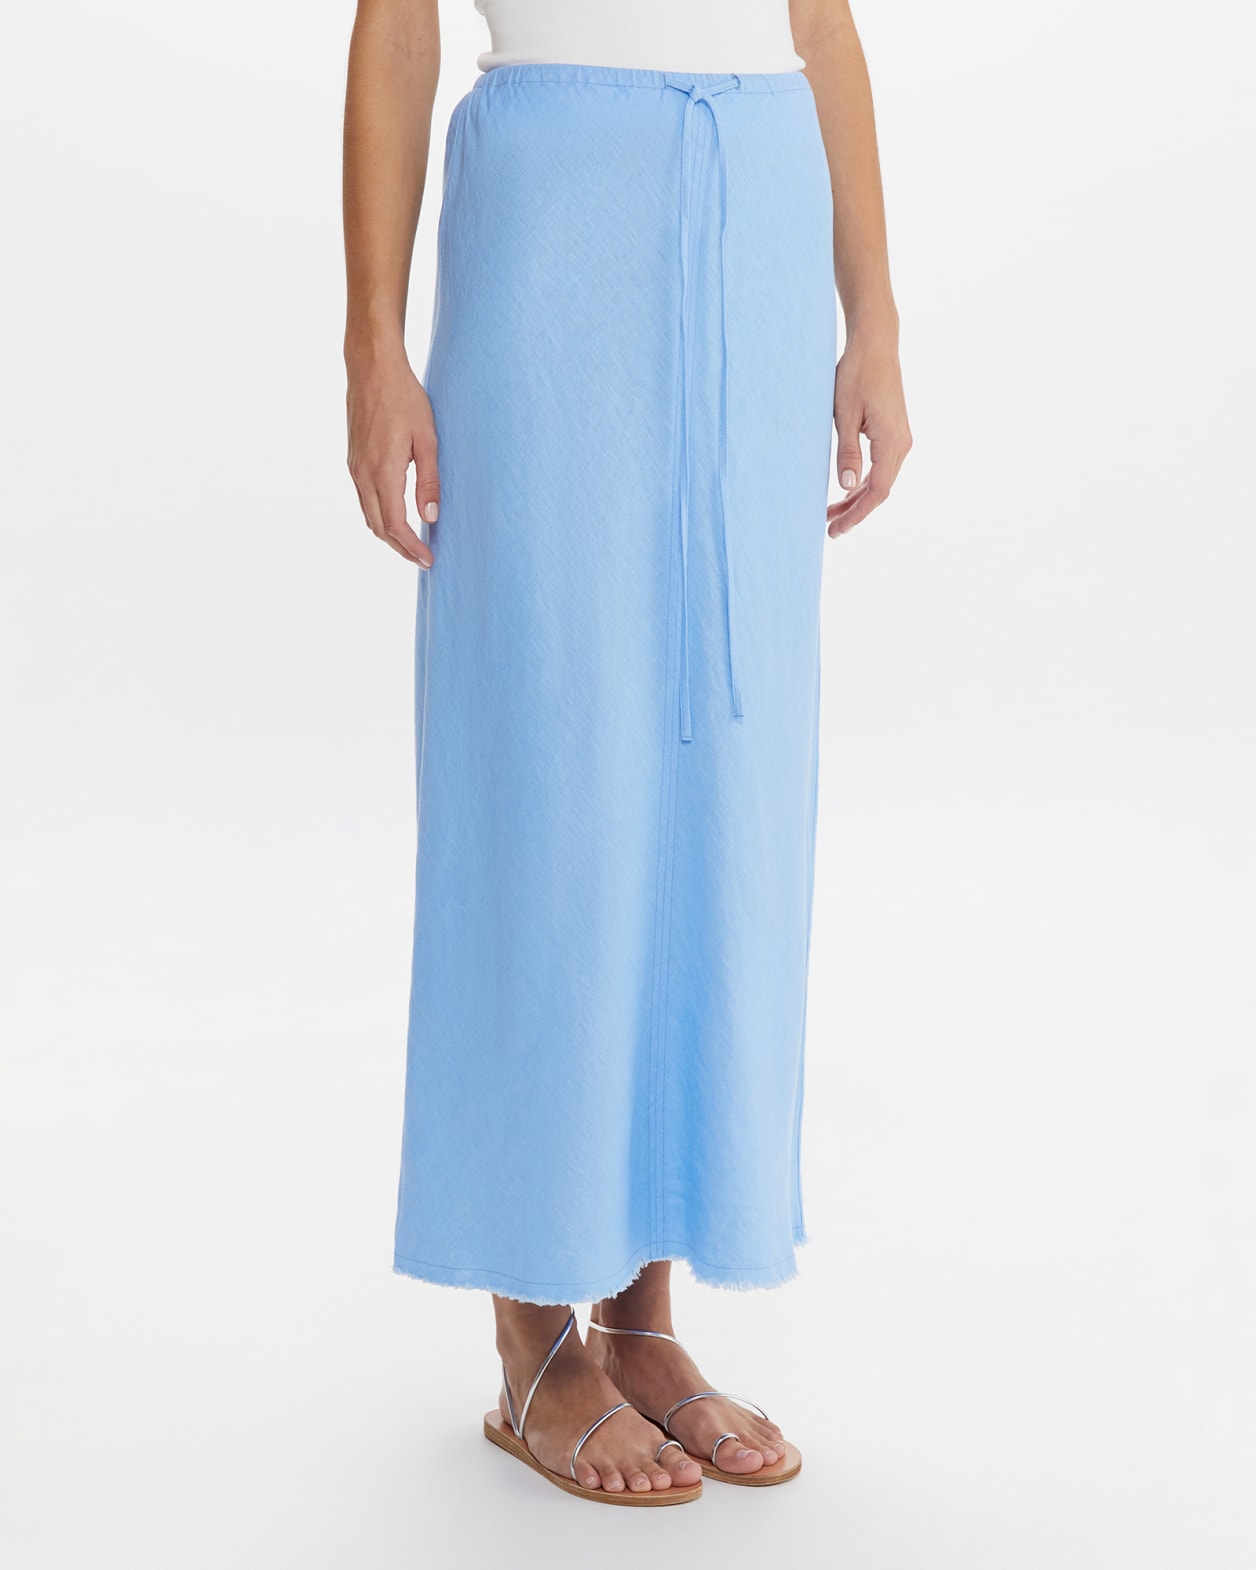 Marcie Easy Linen Slip Skirt in SAILOR BLUE